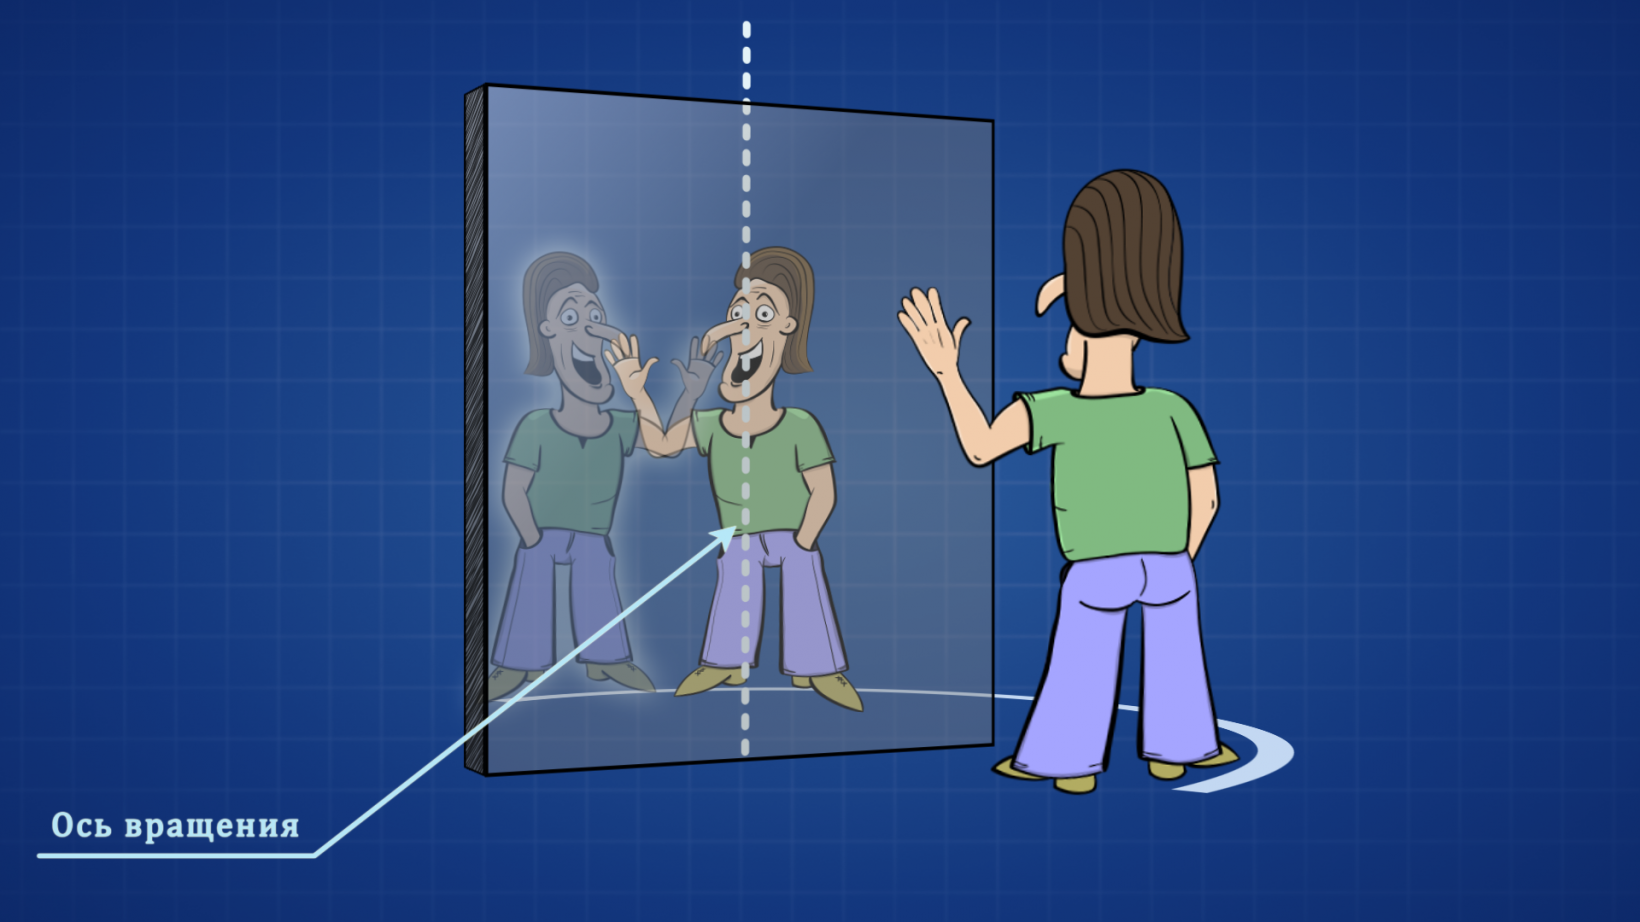 Лево право в зеркале. Почему зеркало меняет местами право и лево. Почему зеркало меняет местами право и лево а верх и низ нет. Право и лево в зеркальном отражении. Звук поменялся местами